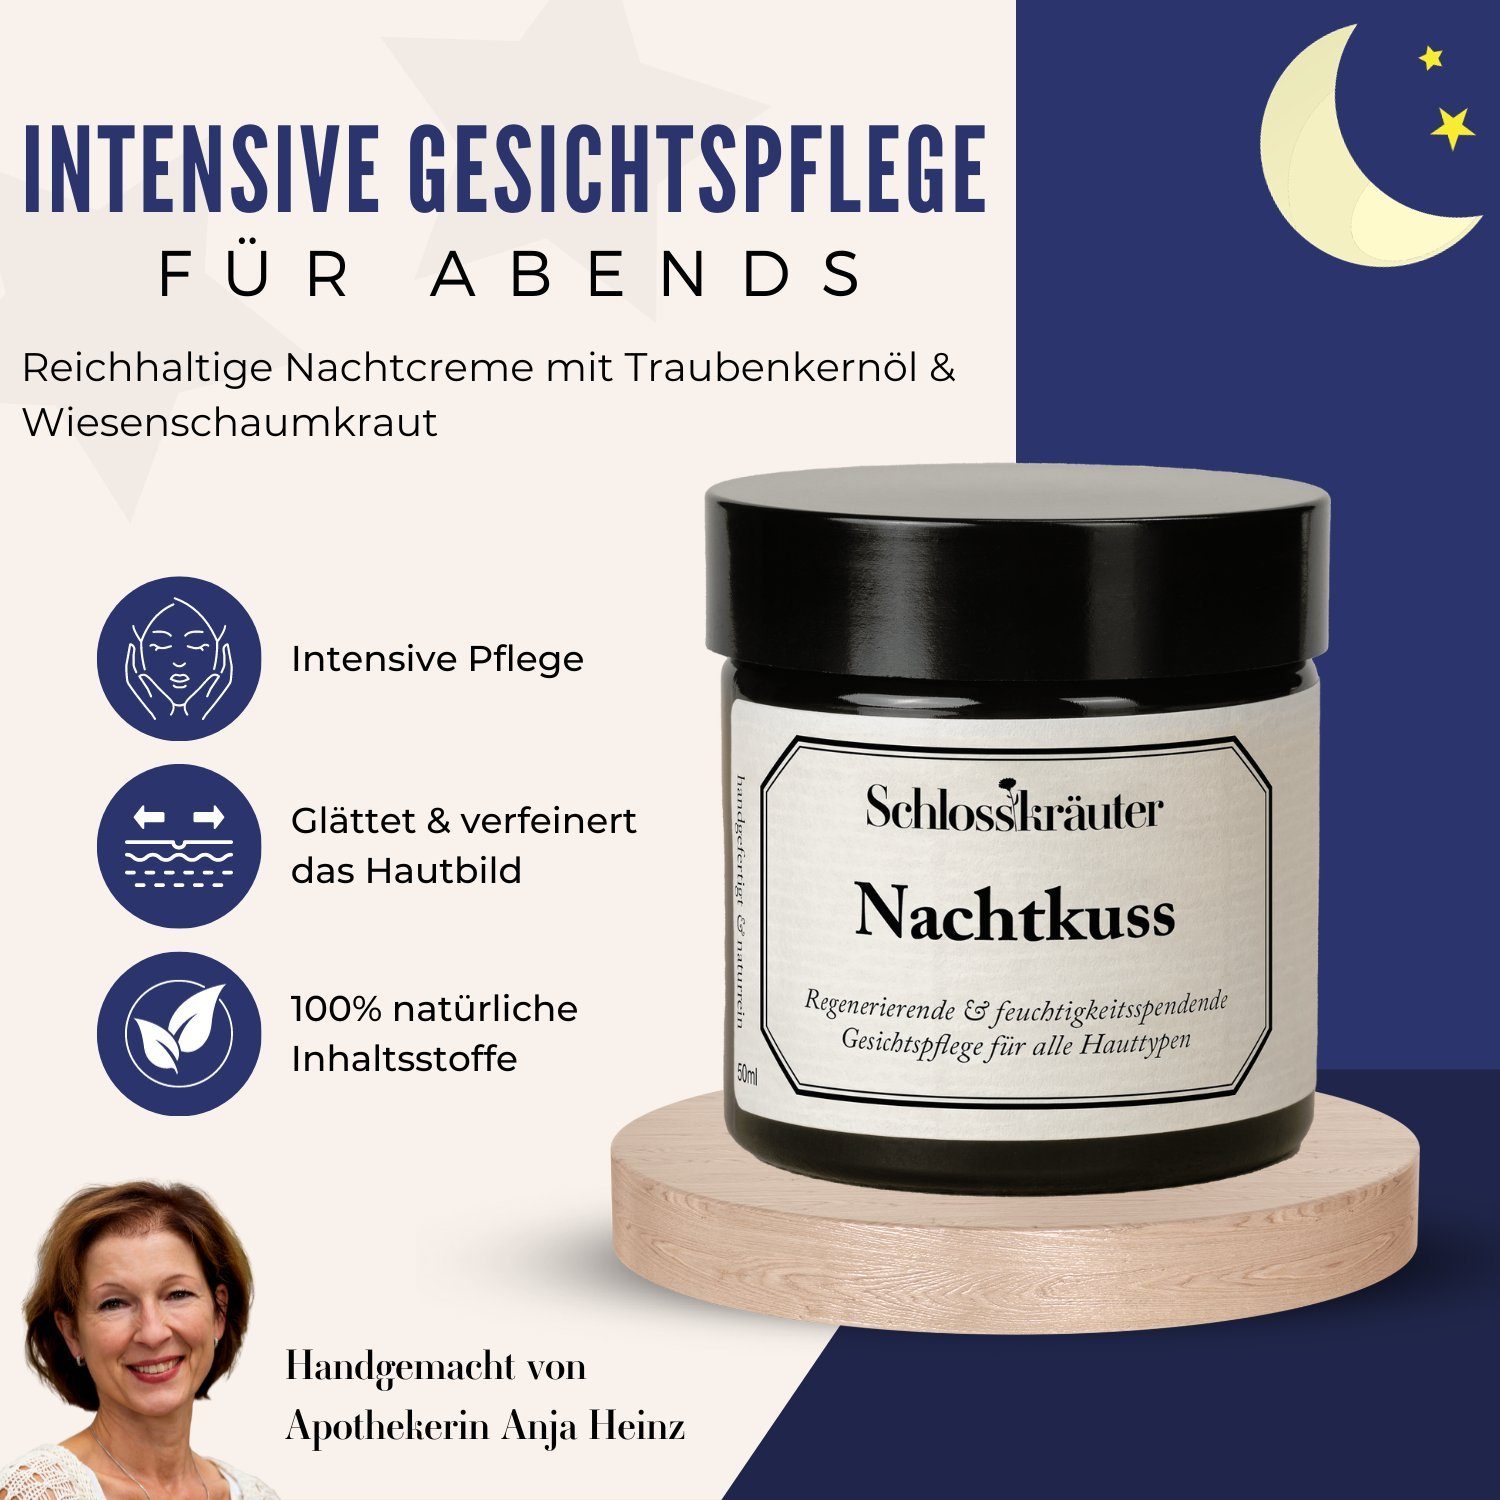 Nachtcreme Reichhaltige alle Gesichtscreme, Nachtkuss Hauttypen für Schlosskräuter Nachtcreme